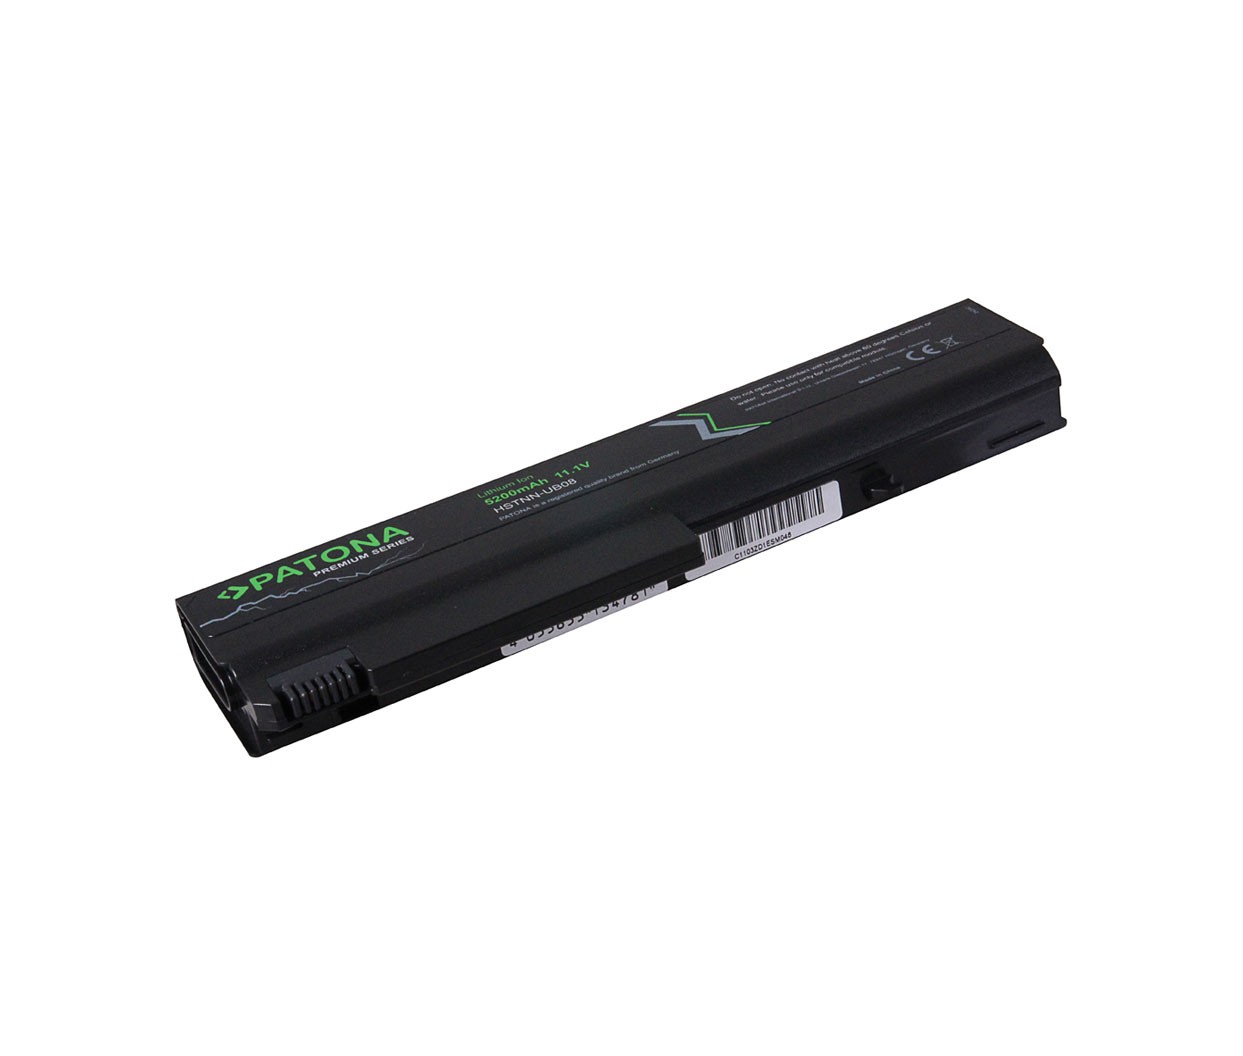 Baterija za HP COMPAQ 6510B, NX6325, NX6310, NX6125, NX6110, NC6400,..